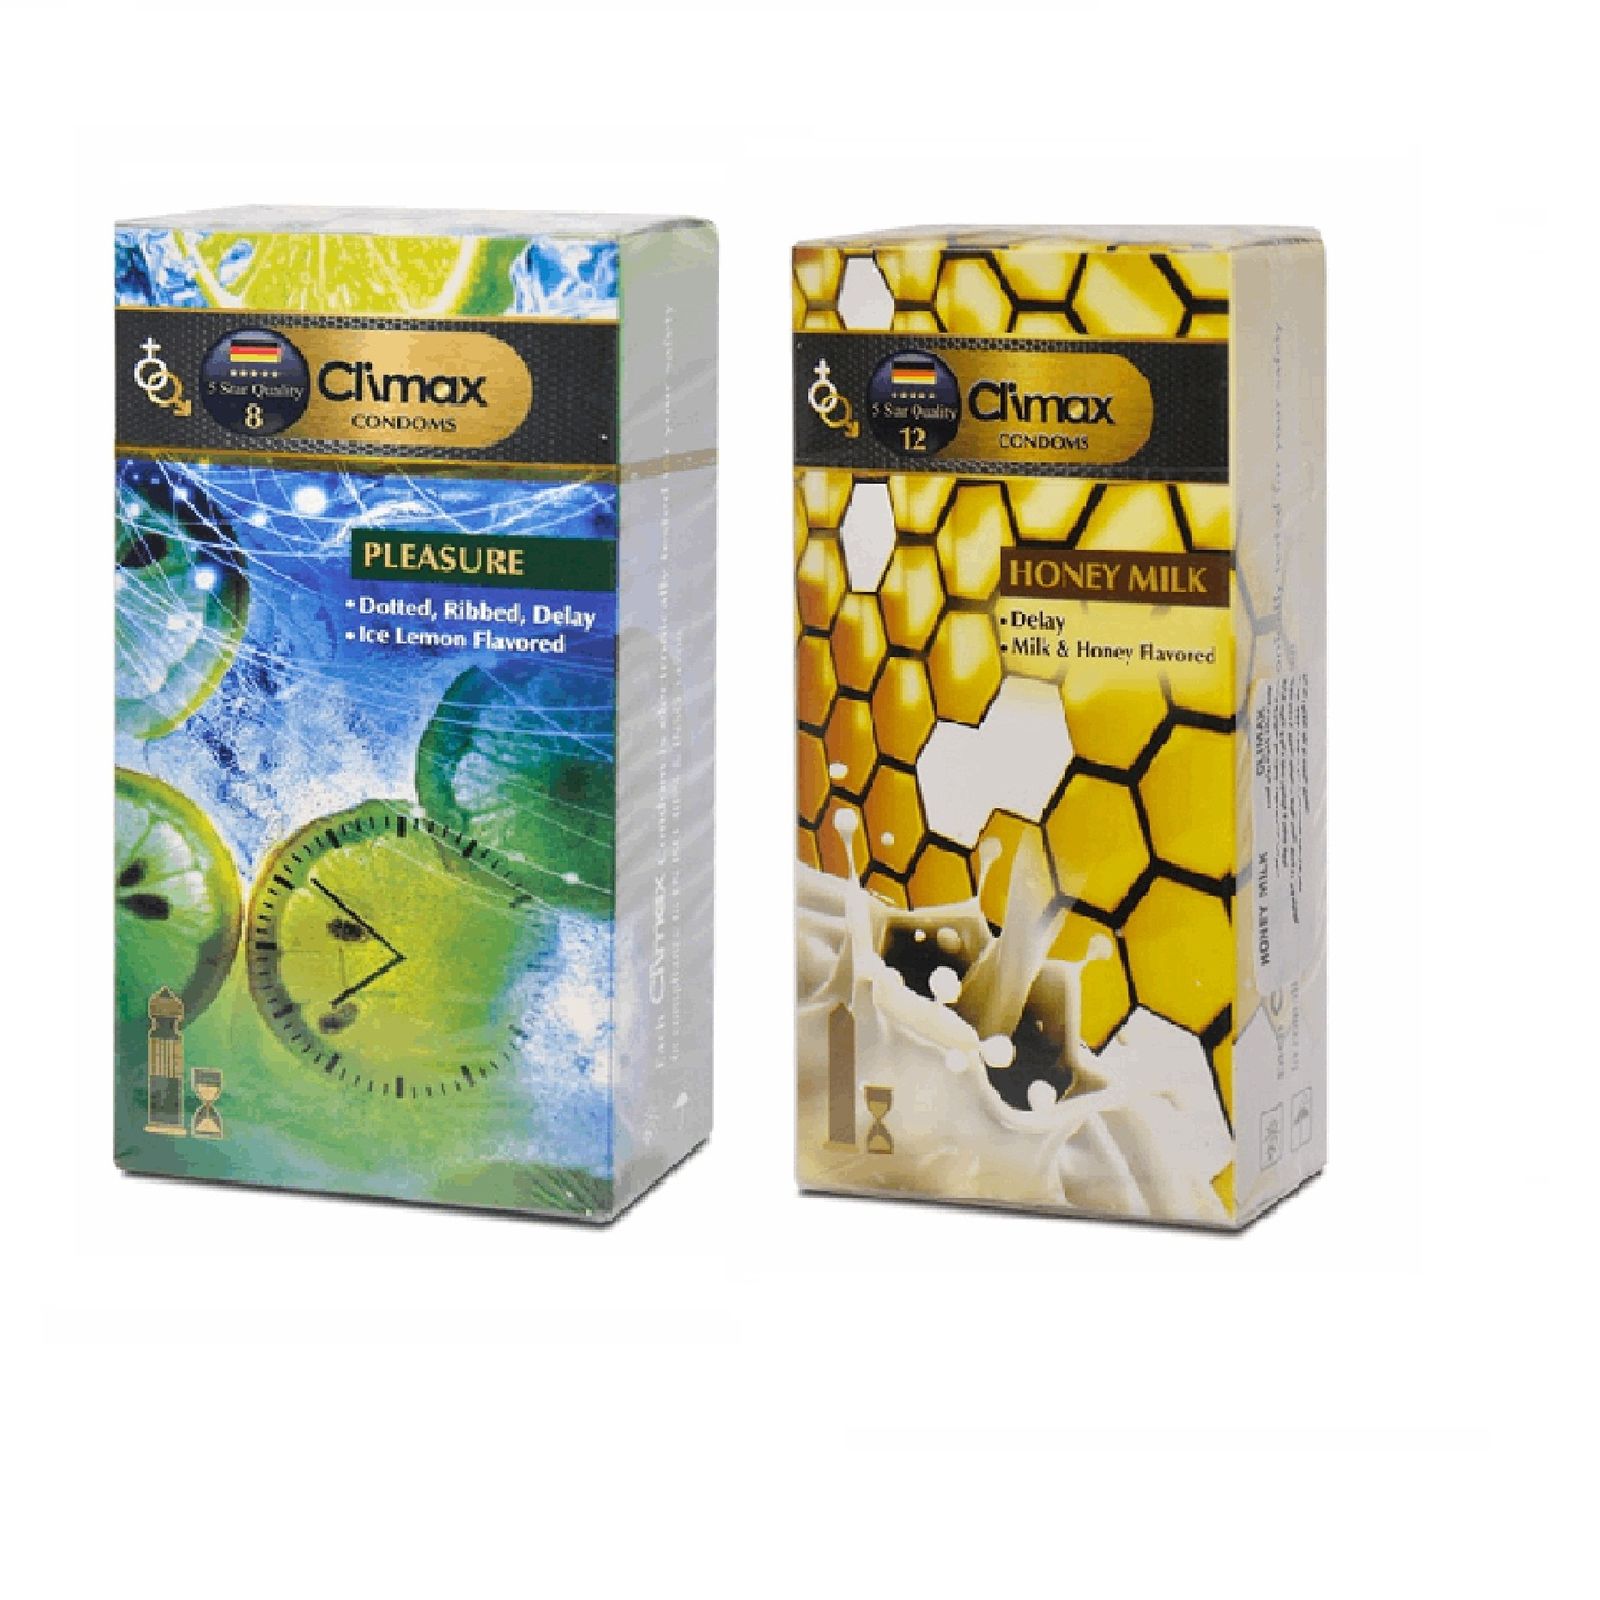 کاندوم کلایمکس مدل Pleasure  بسته 12 عددی به همراه کاندوم کلایمکس مدل Honey Milk  بسته 12 عددی  -  - 2